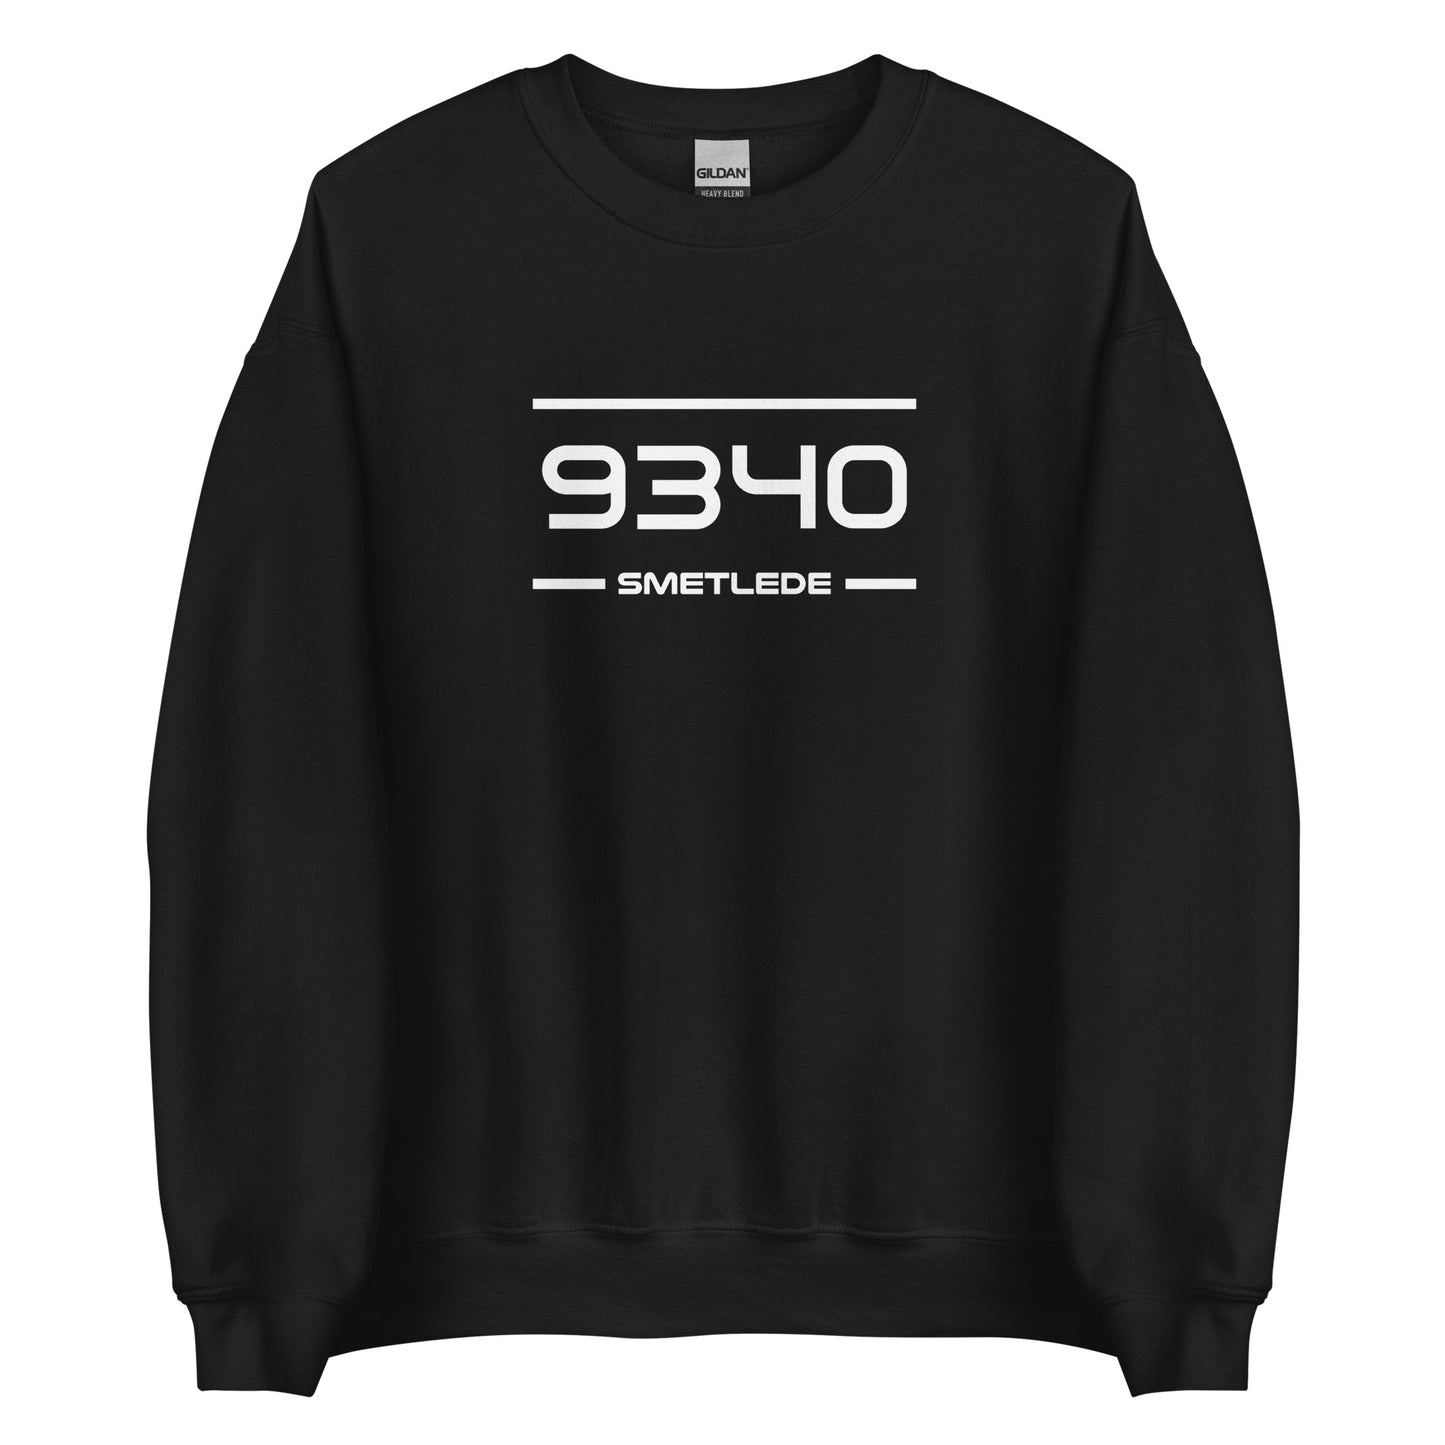 Sweater - 9340 - Smetlede (M/V)